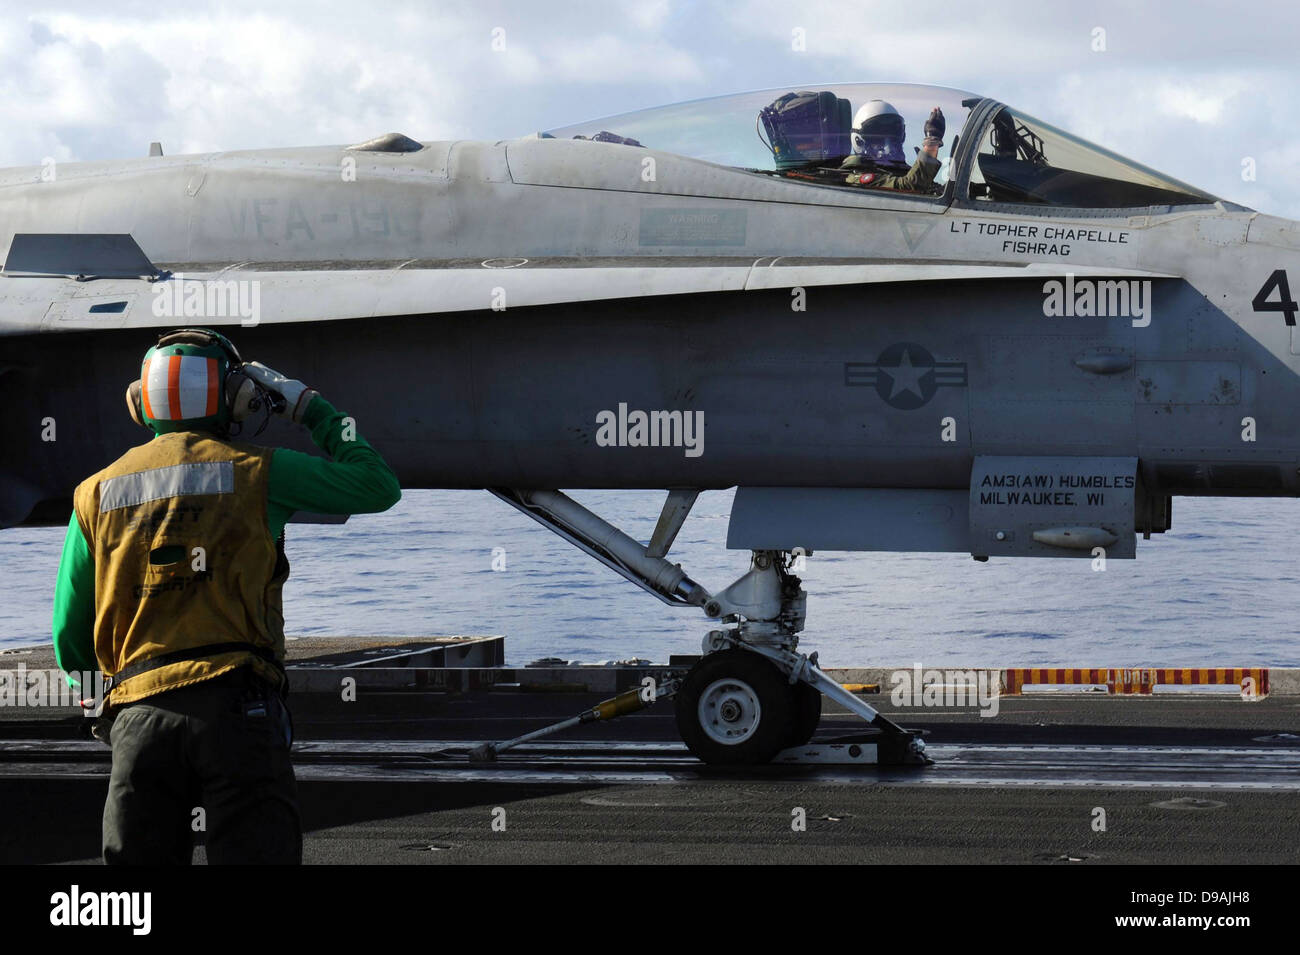 L'Aviation de l'US Navy un manoeuvrier salue un F/A-18 pilote avant de décoller sur le pont du porte-avions USS John C. Stennis Avril 24,2013 opérant dans l'océan Pacifique. Banque D'Images